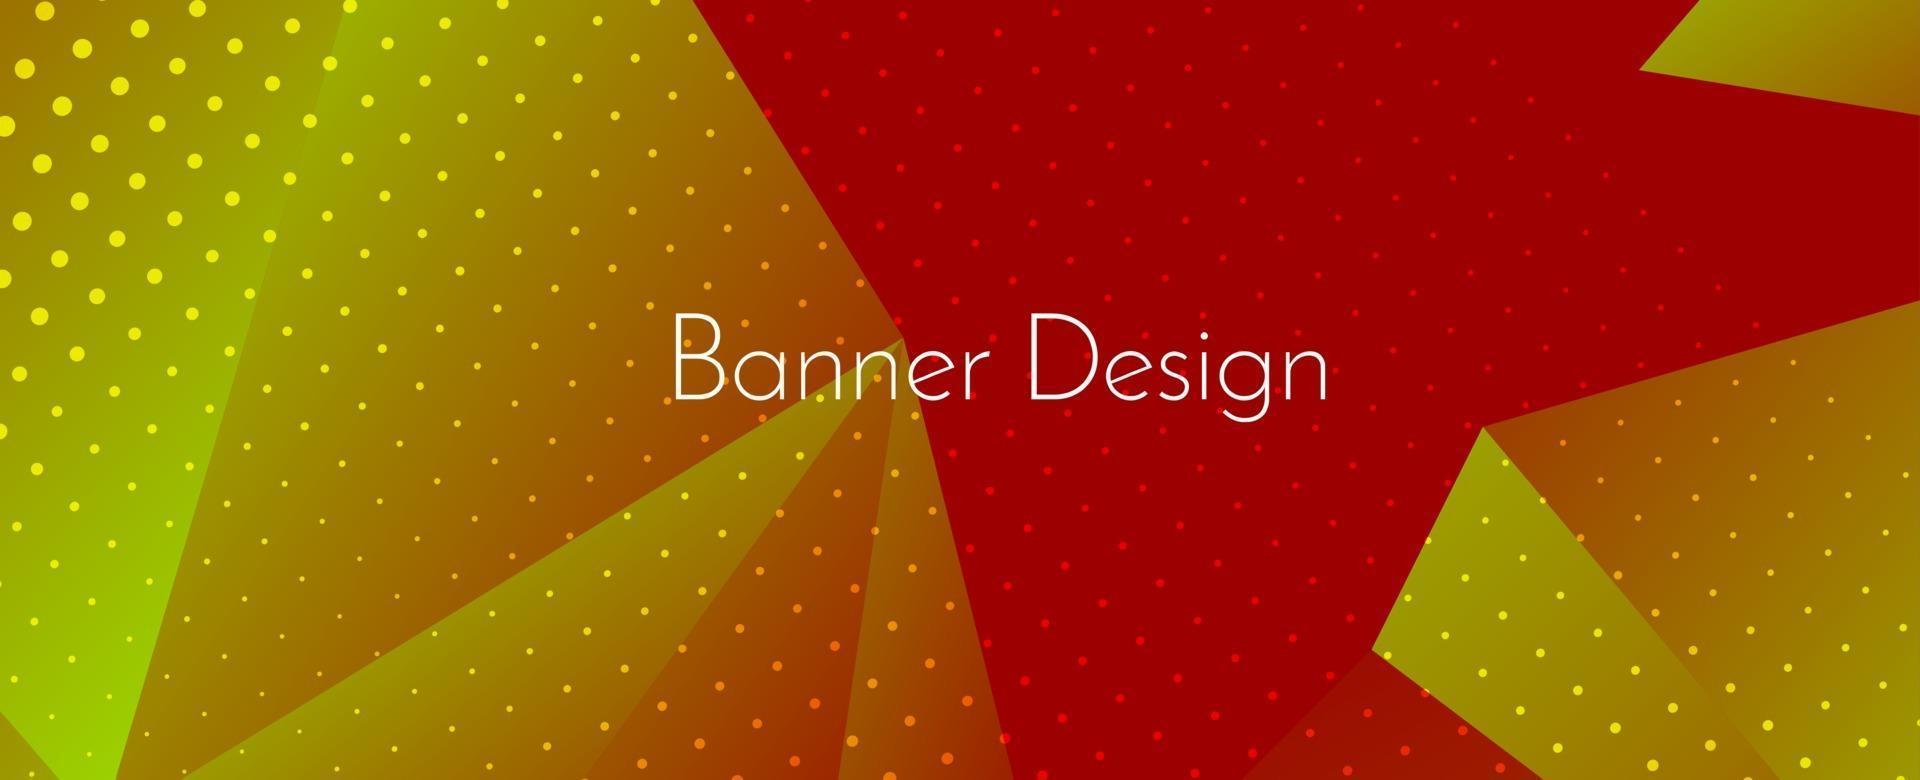 Fondo de banner de diseño decorativo geométrico elegante abstracto vector